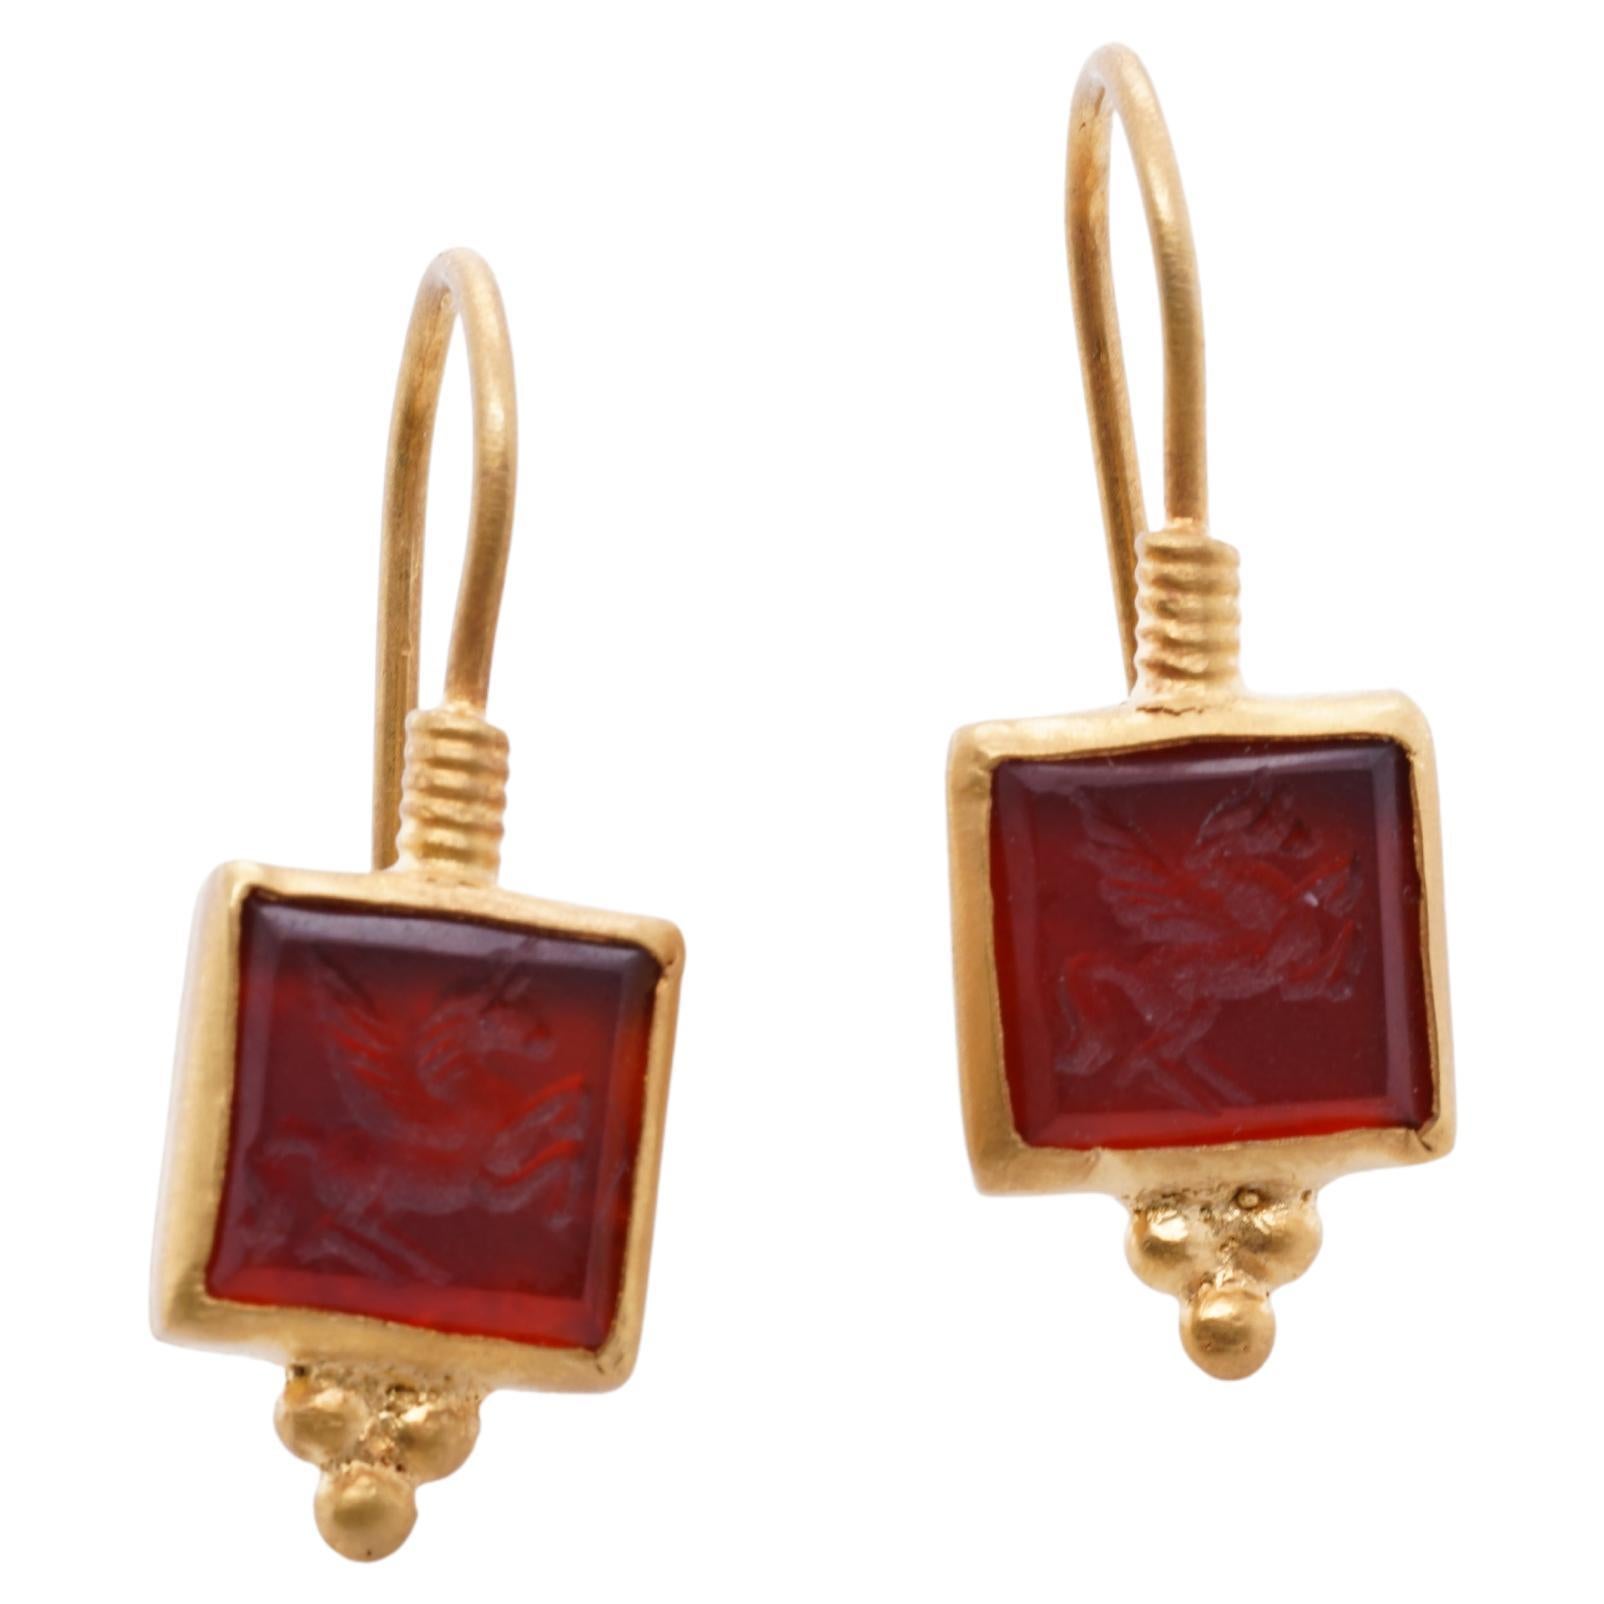 24K on Sterling Silver, Red Agate Pegasus Carved Earrings by Kurtulan Jewellery